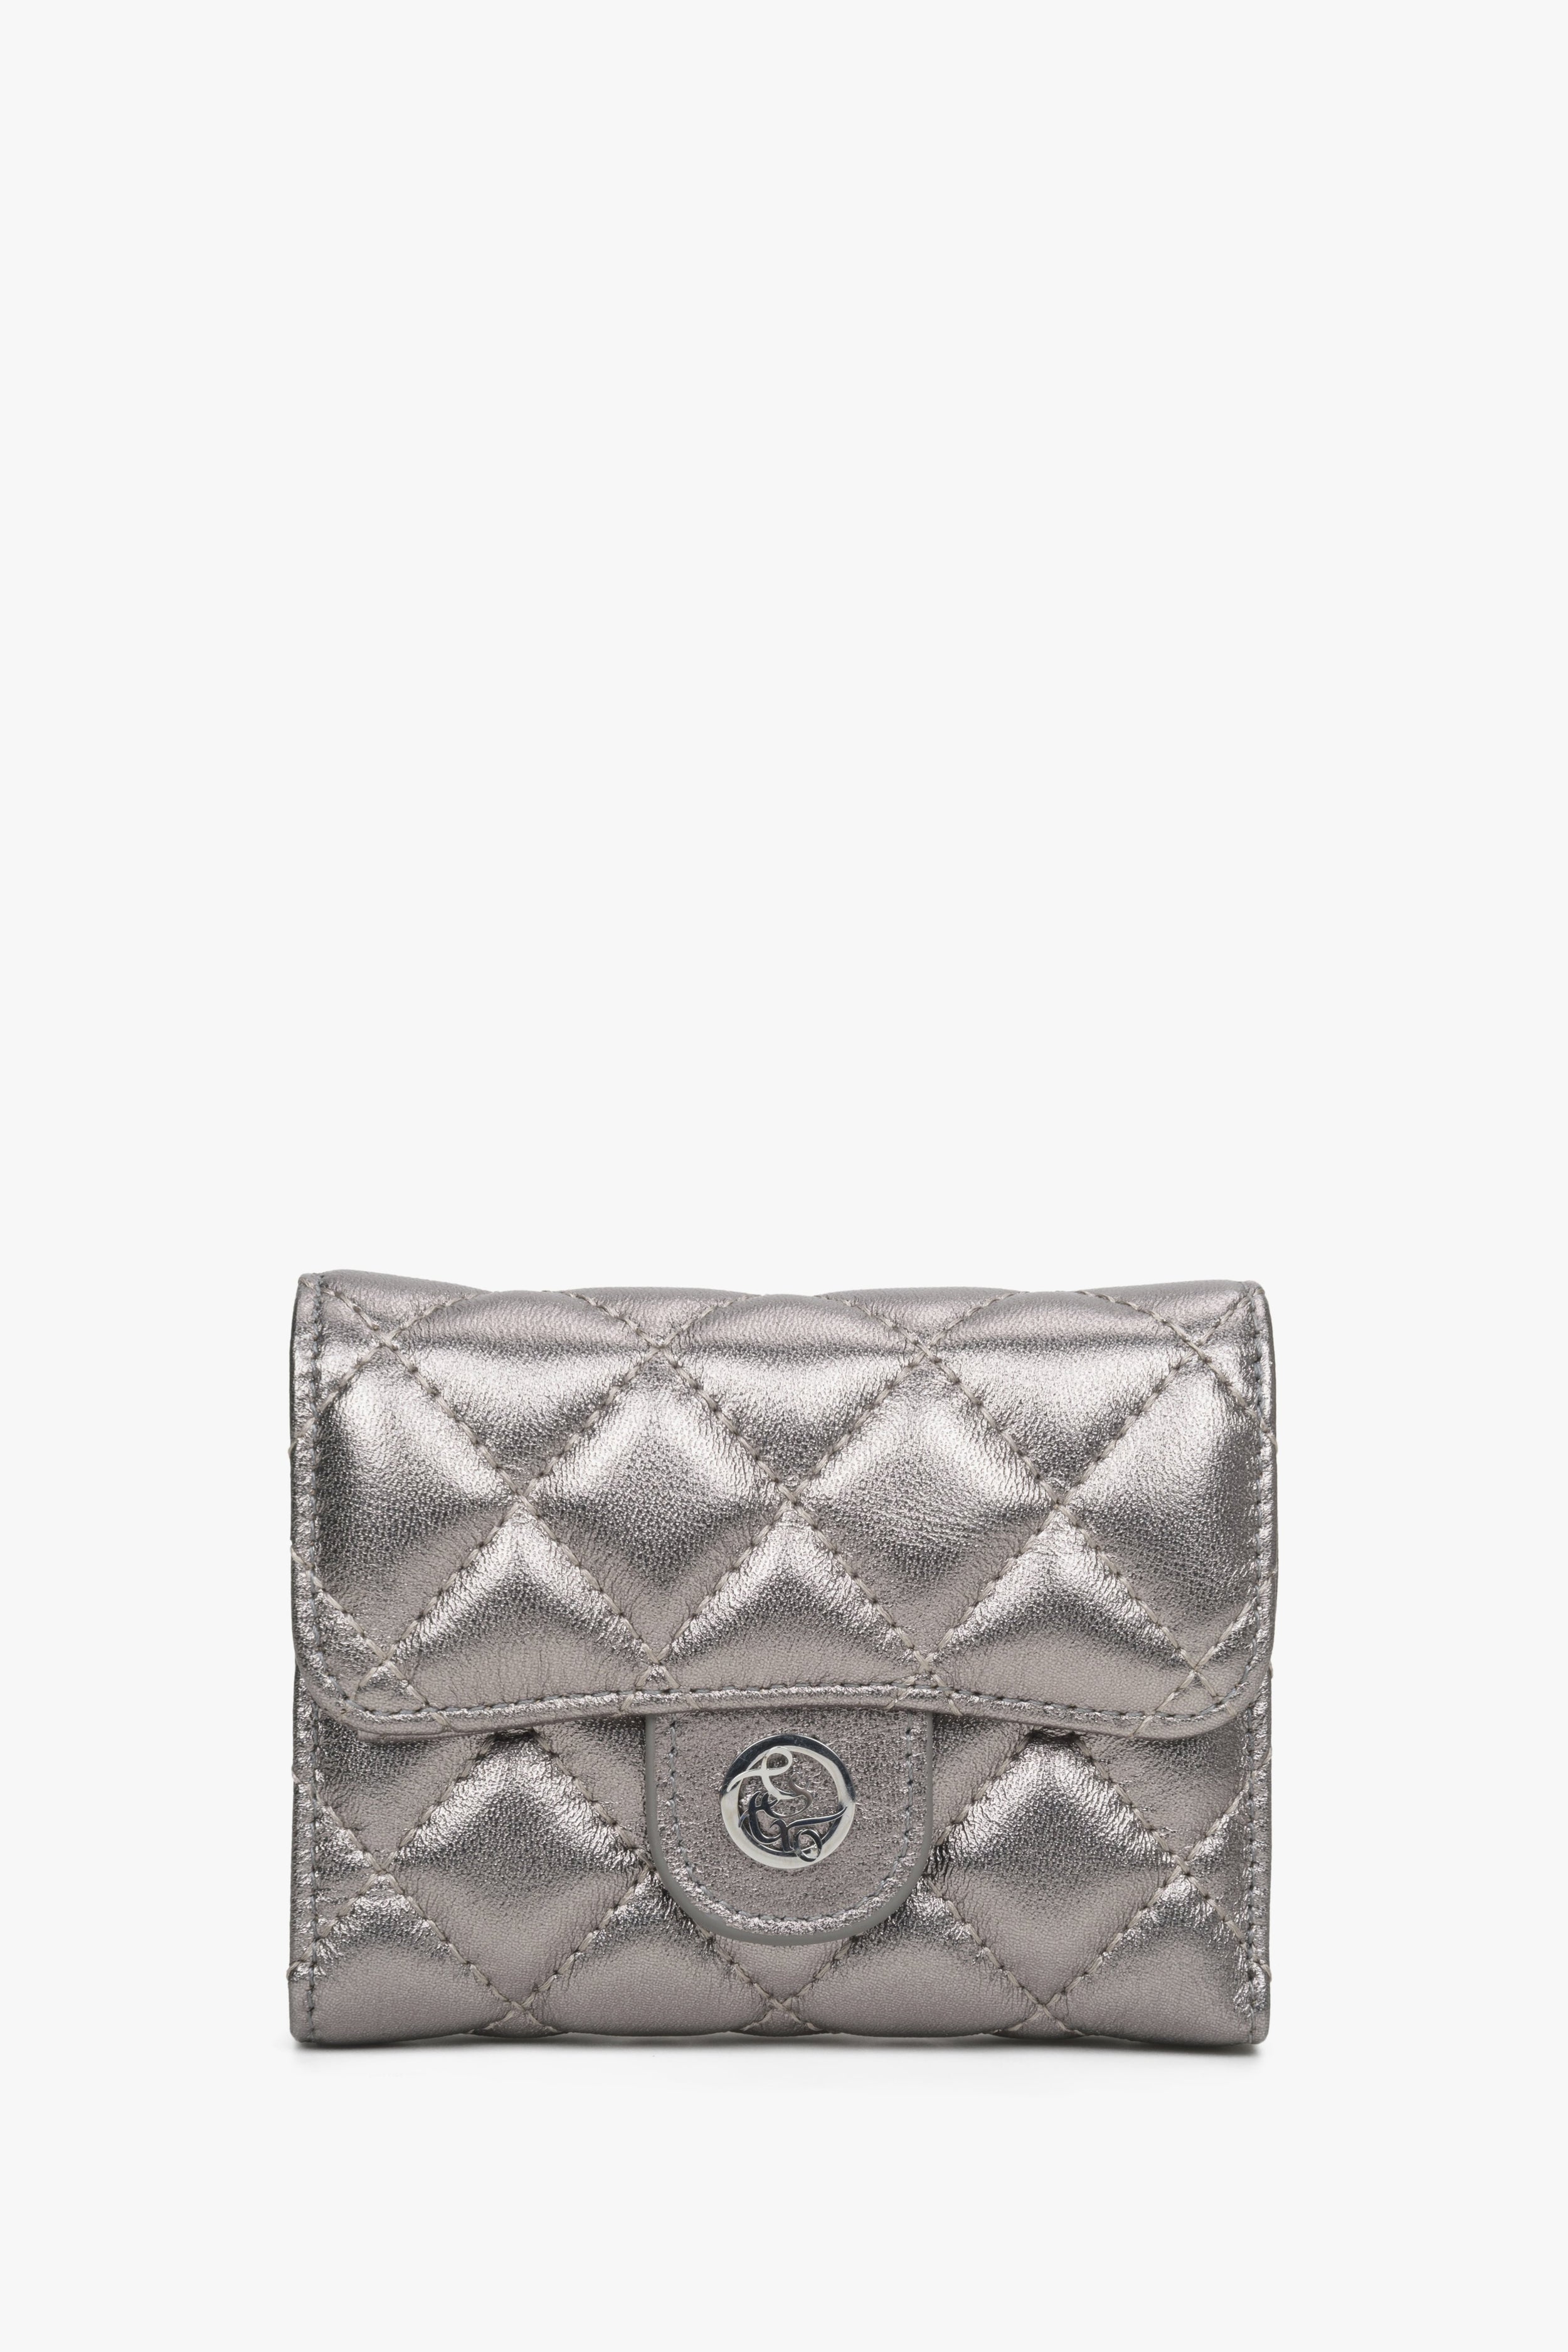 Estro: Mały srebrny portfel damski z ozdobnym tłoczeniem